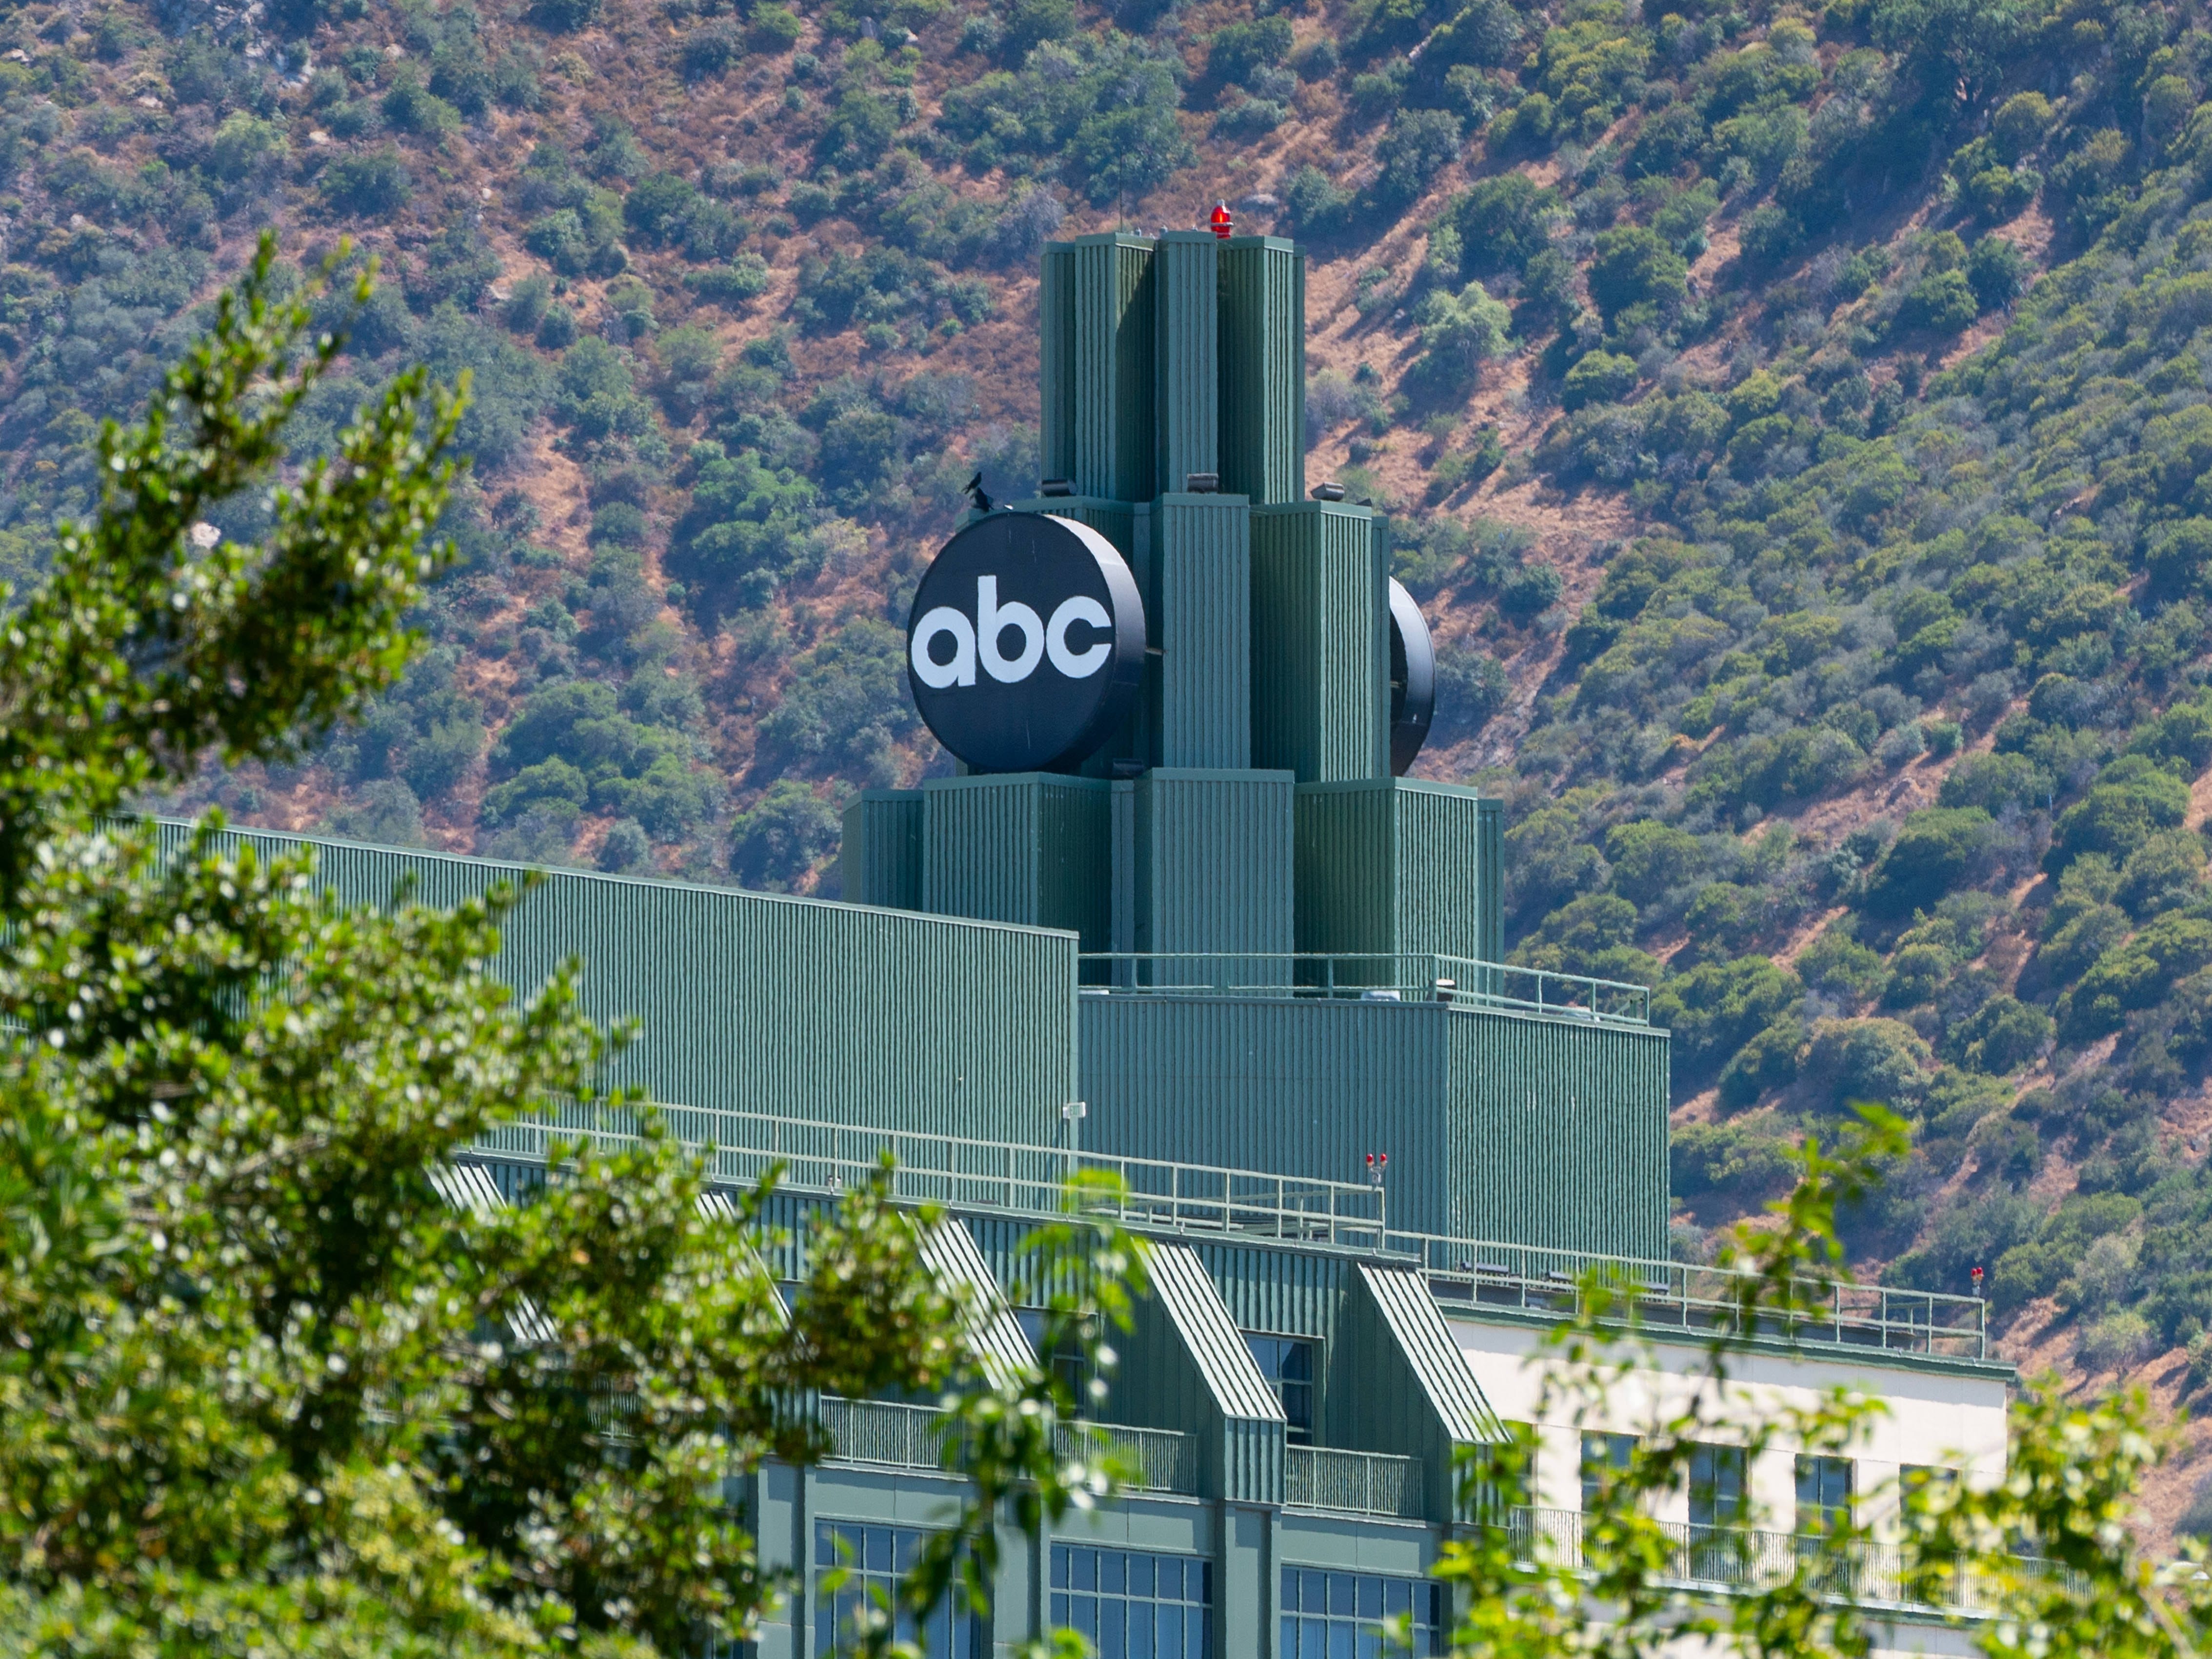 Allgemeine Ansichten des Hauptsitzes von ABC Television auf dem Studiogelände der Walt Disney Company am 24. Juni 2022 in Burbank, Kalifornien.